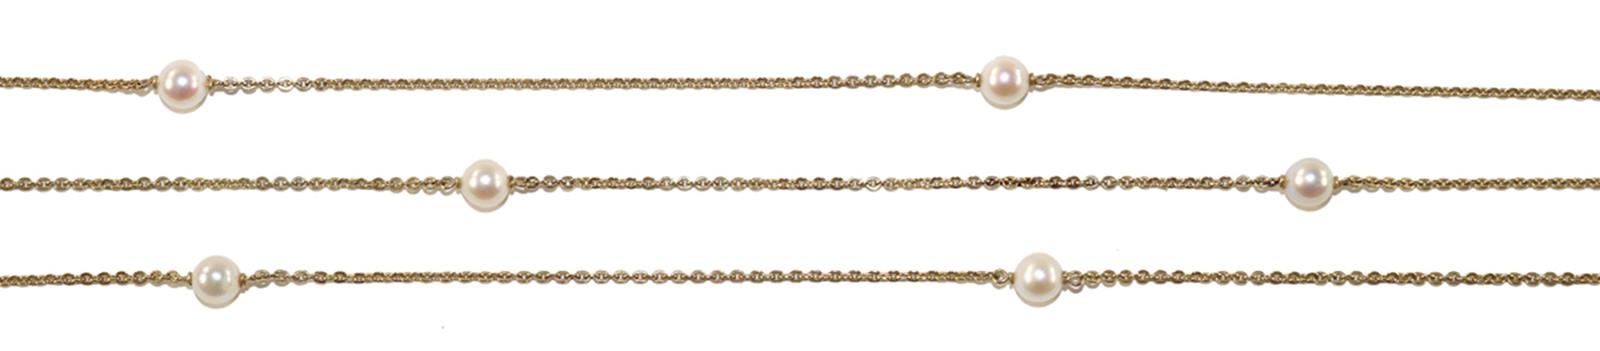 Goldkette mit 10 Perlen. | Bild Nr.1